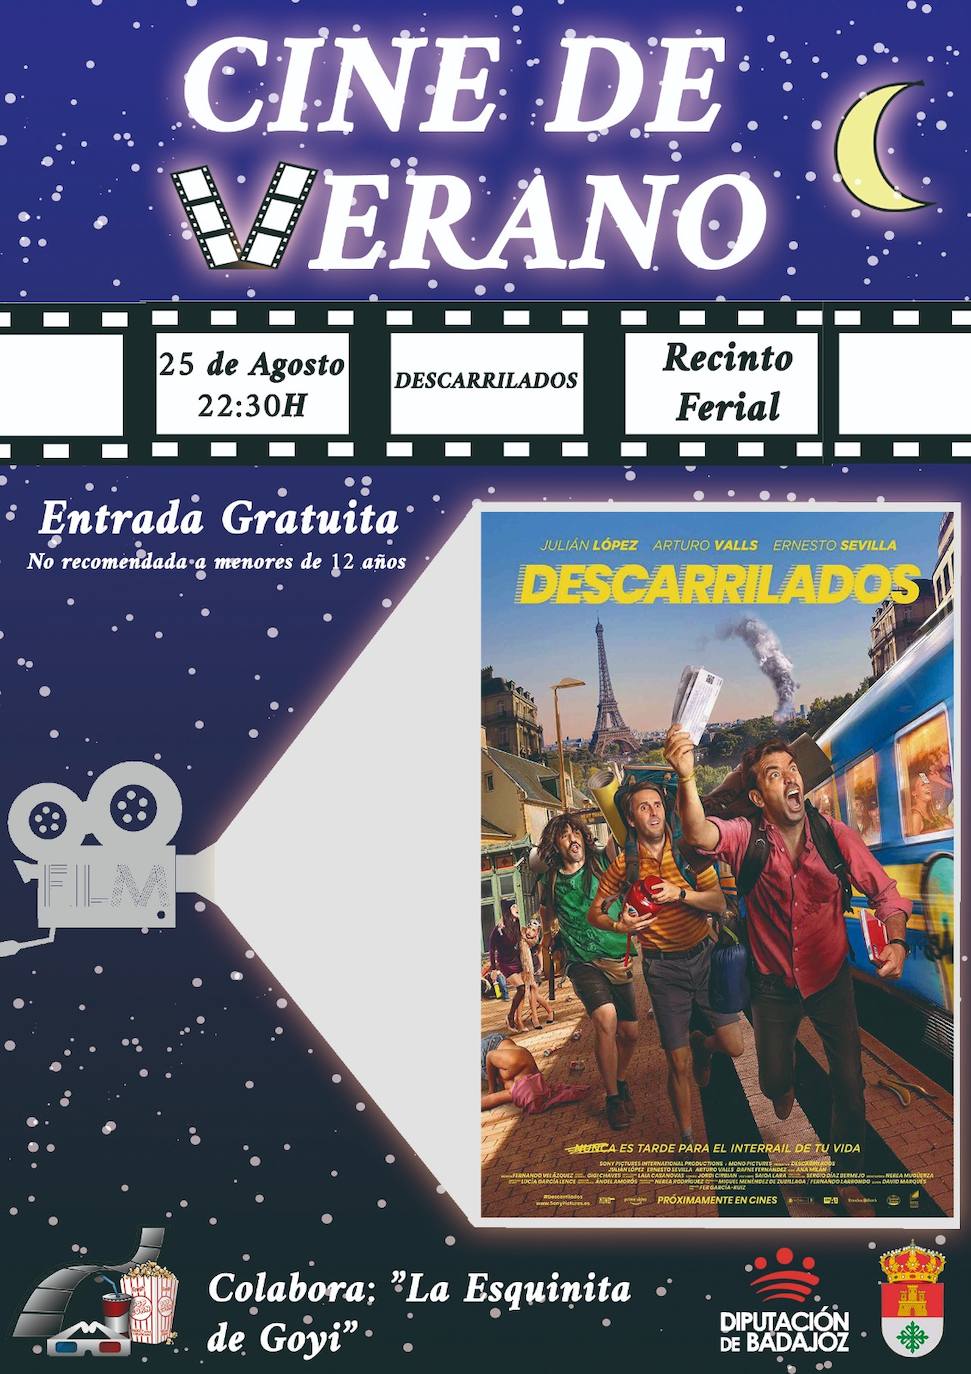 El cine al aire libre del ferial acoge este jueves la proyección de la película 'Descarrilados'